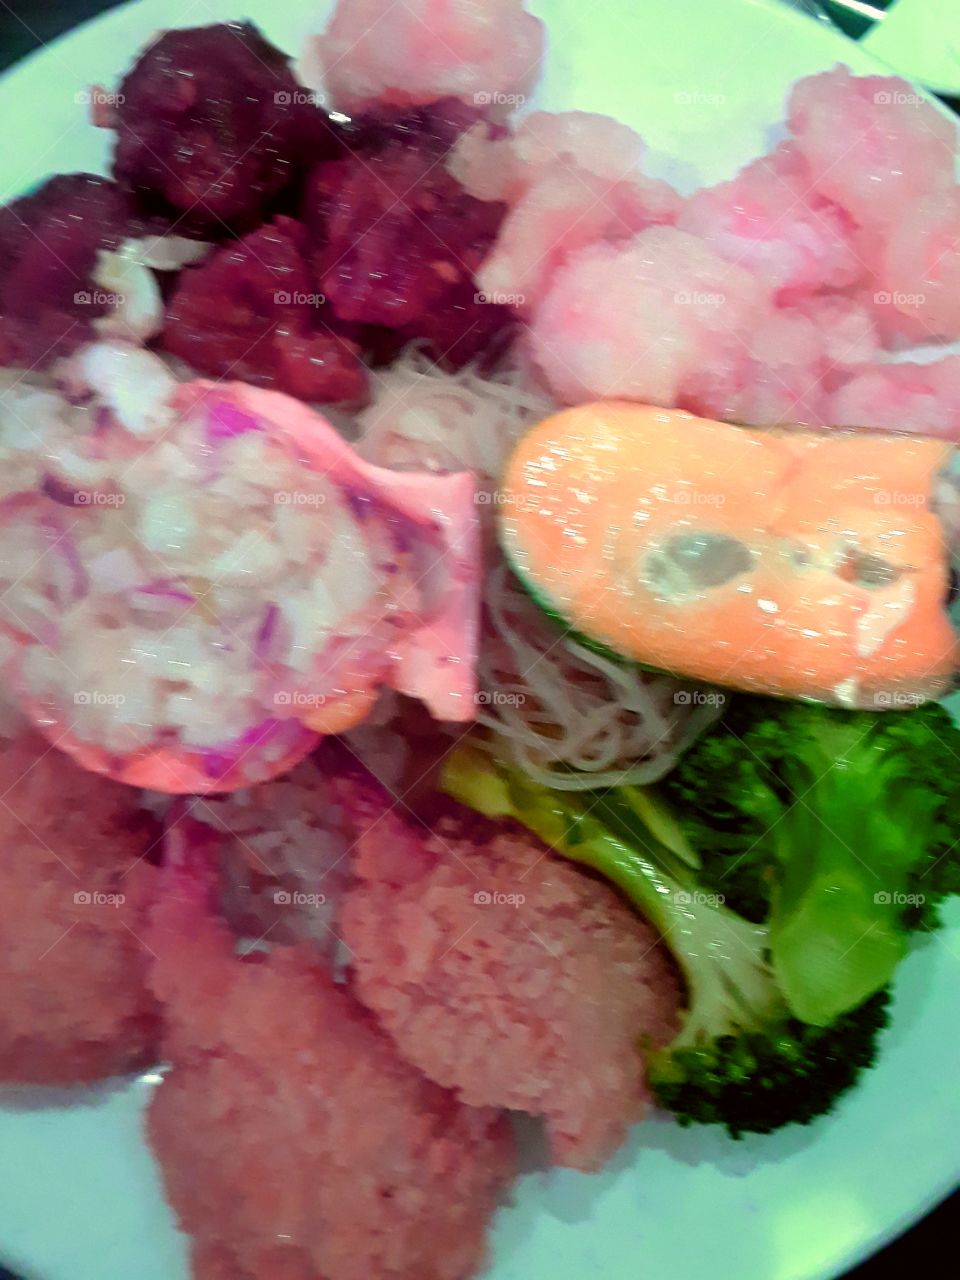 sea food crab filled